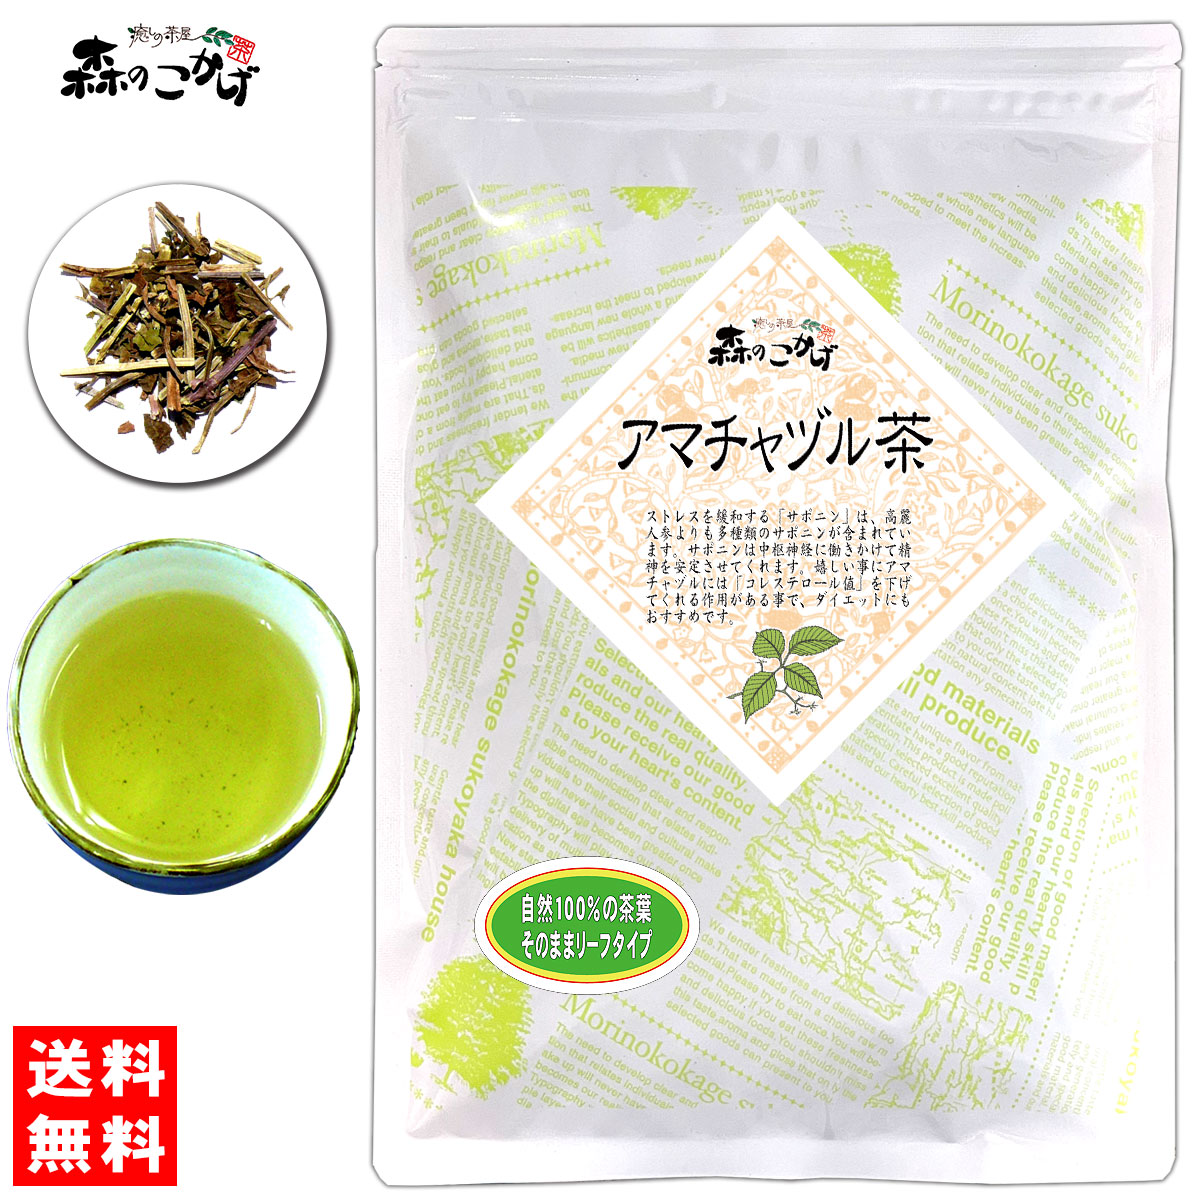 アマチャヅル茶 120g 豪華な 5 送料無料 茶葉 アマチャズル 健やかハウス 森のこかげ あまちゃずる 新商品 新型 健康茶